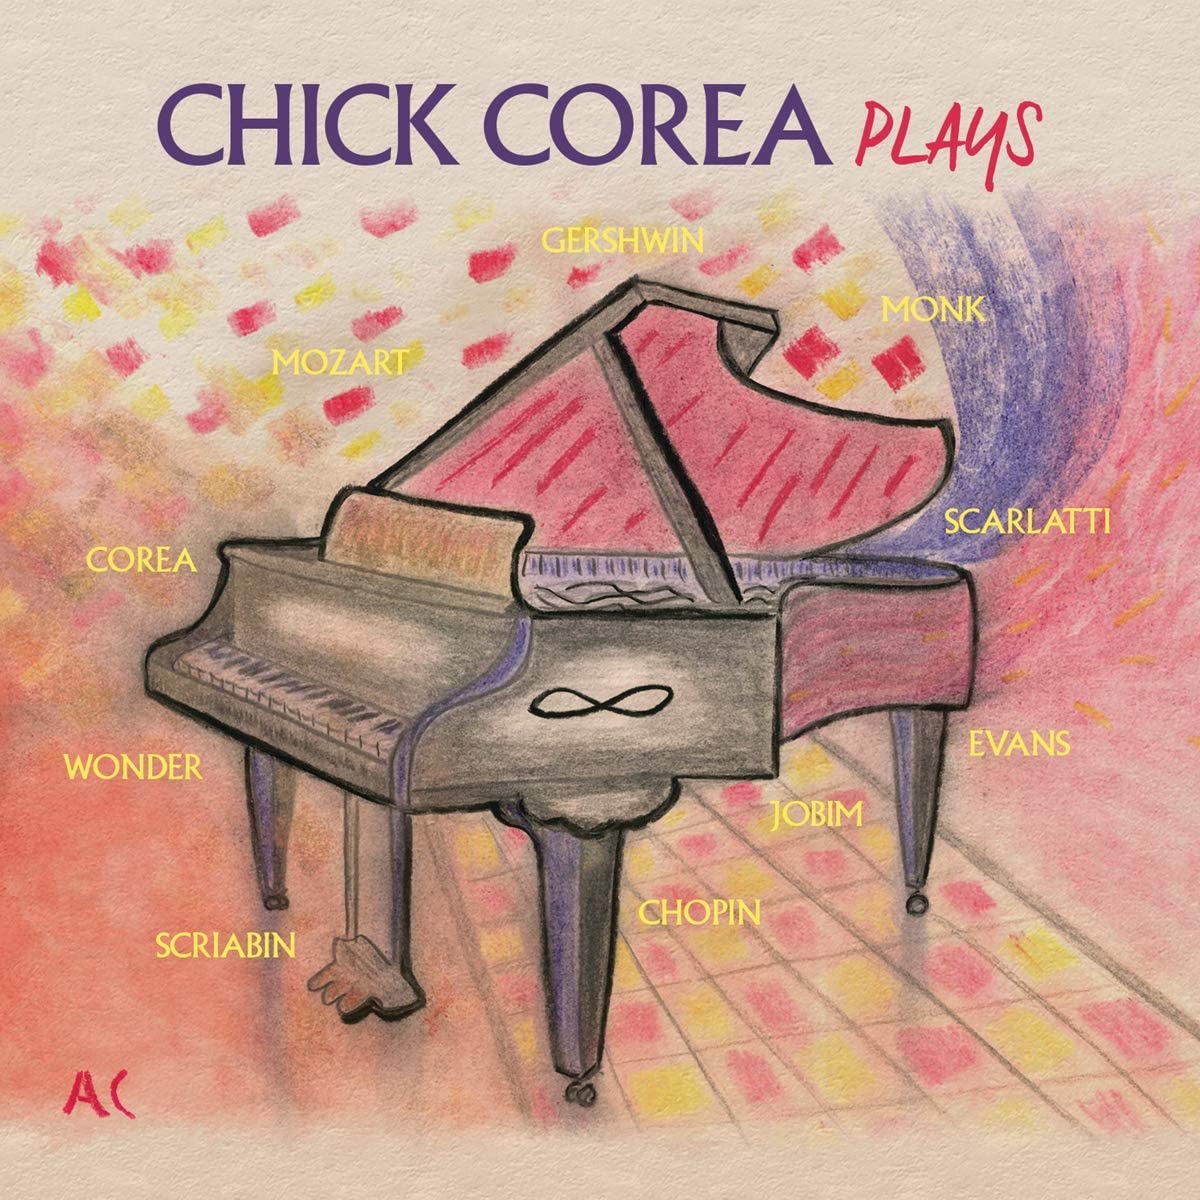 Chick Corea - Plays - 3LP